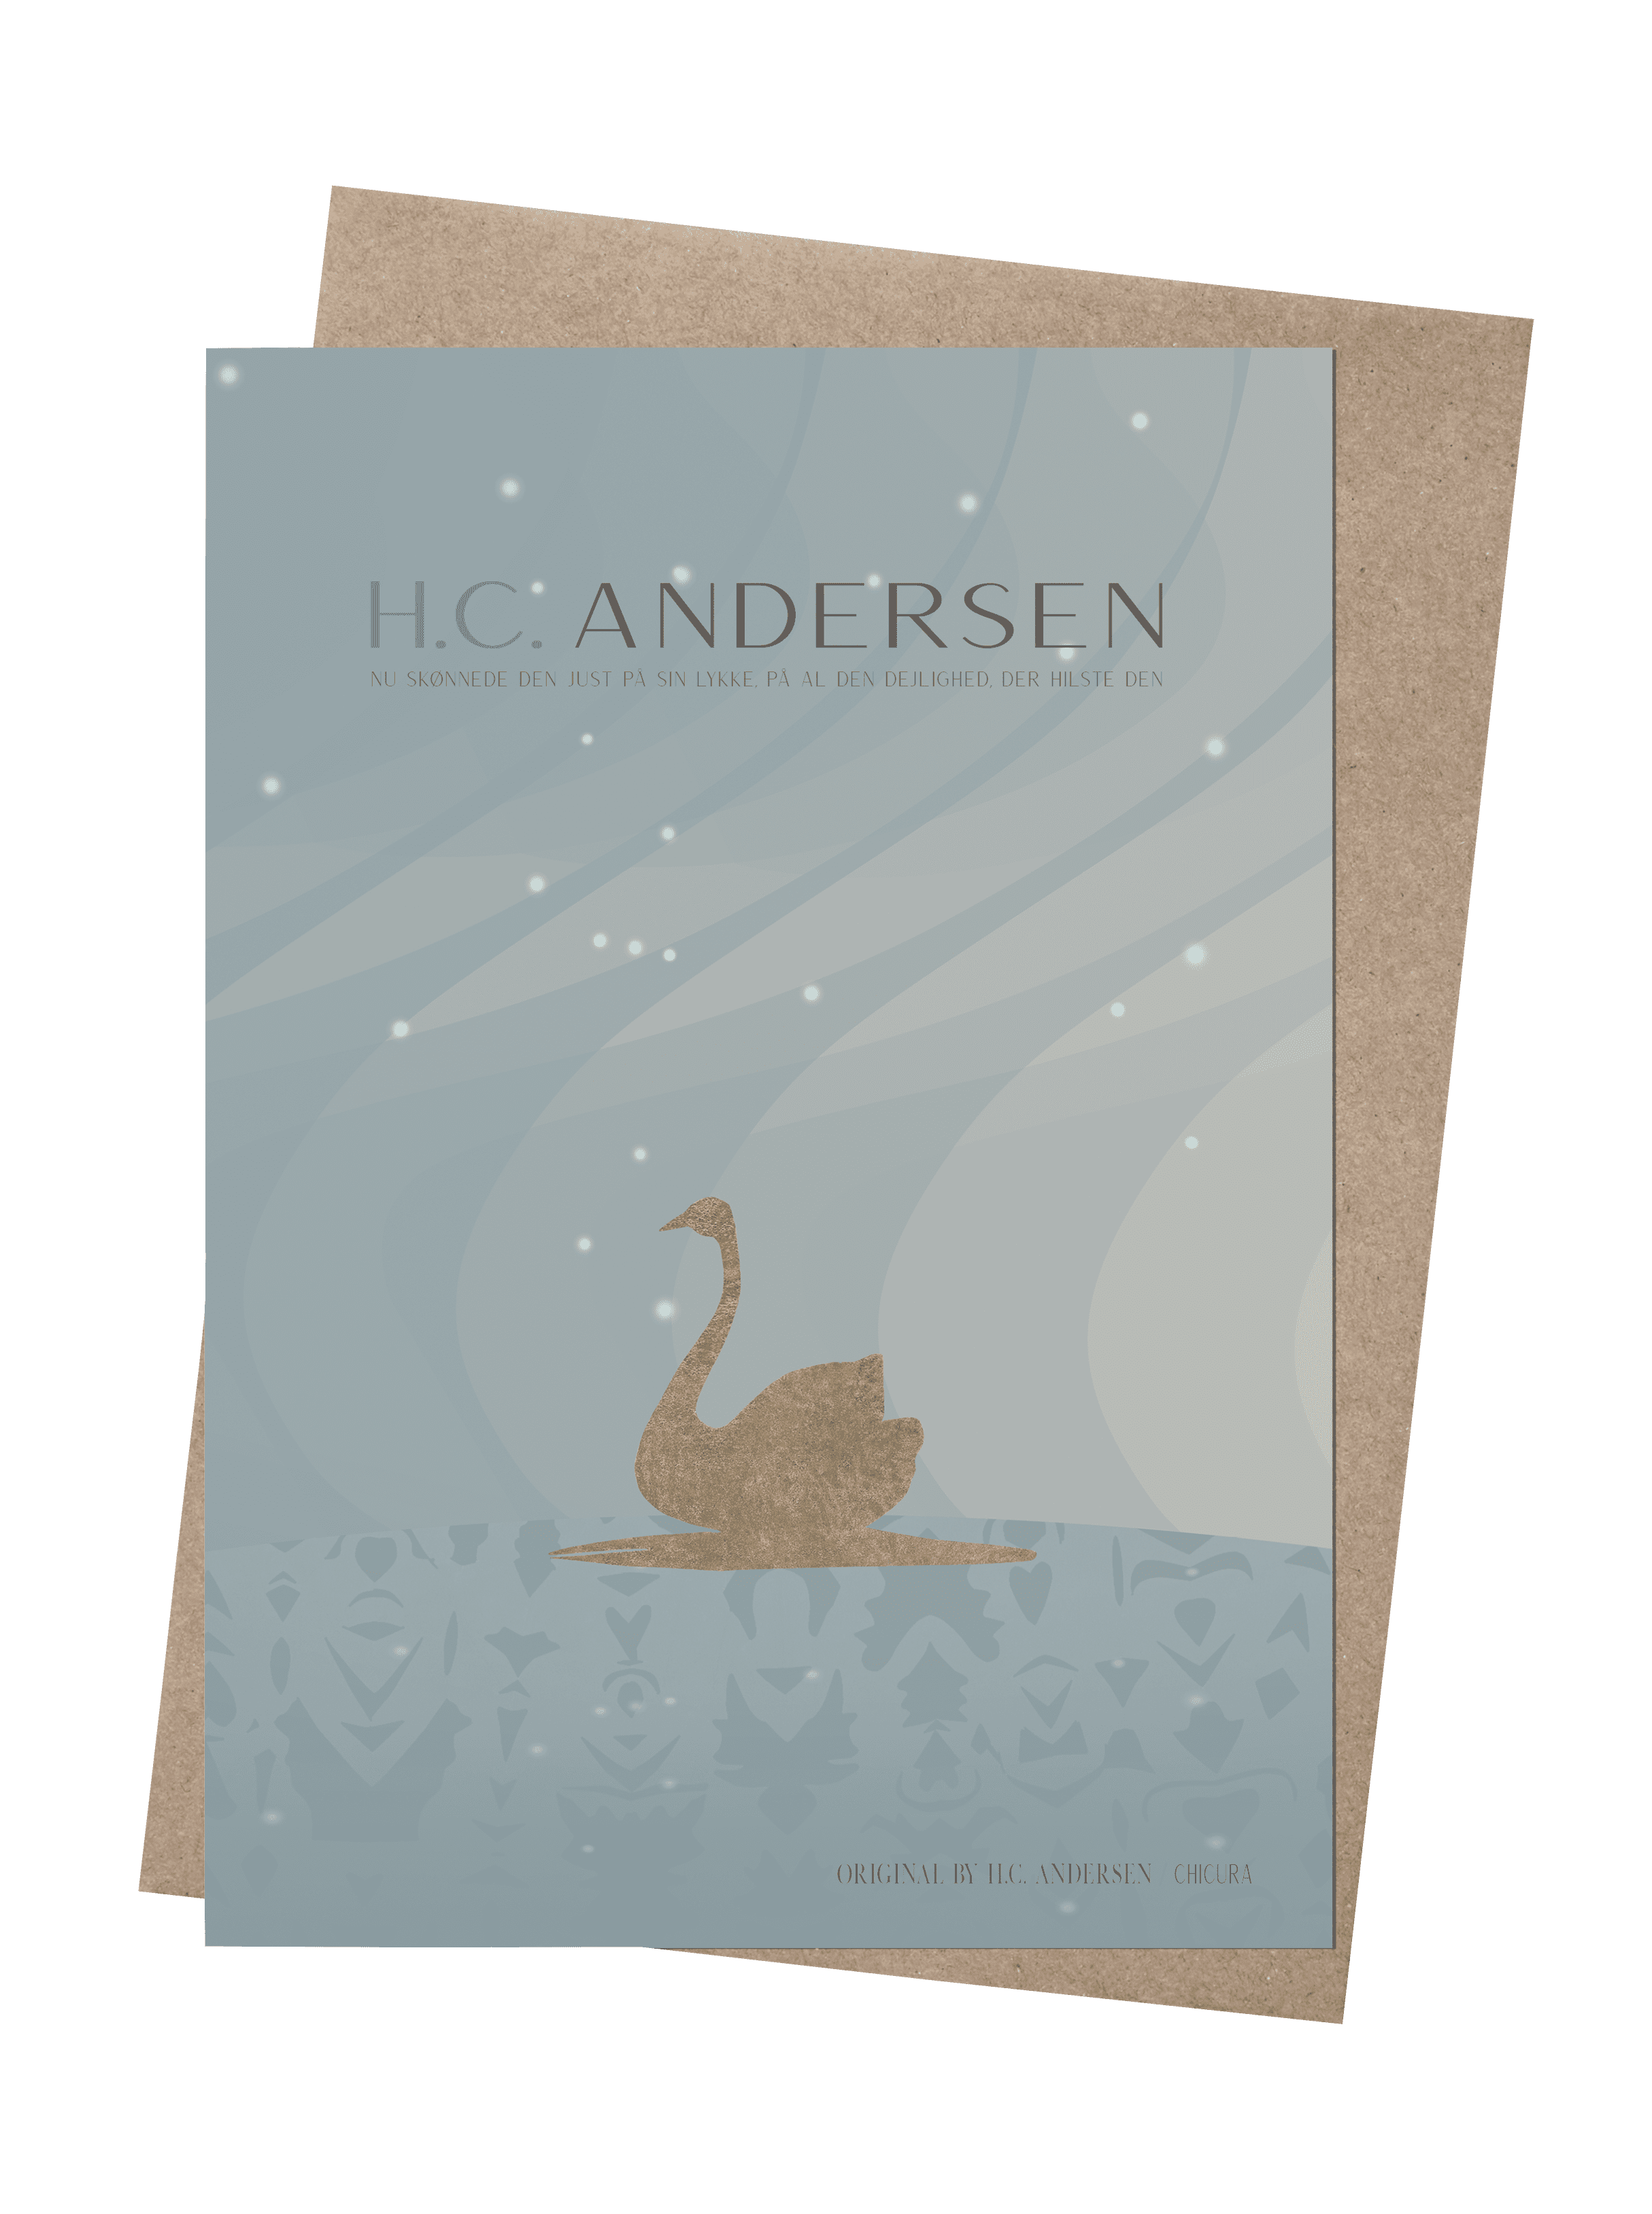 H.C. Andersen - Den Smukke Ælling - ChiCura Copenhagen DK -